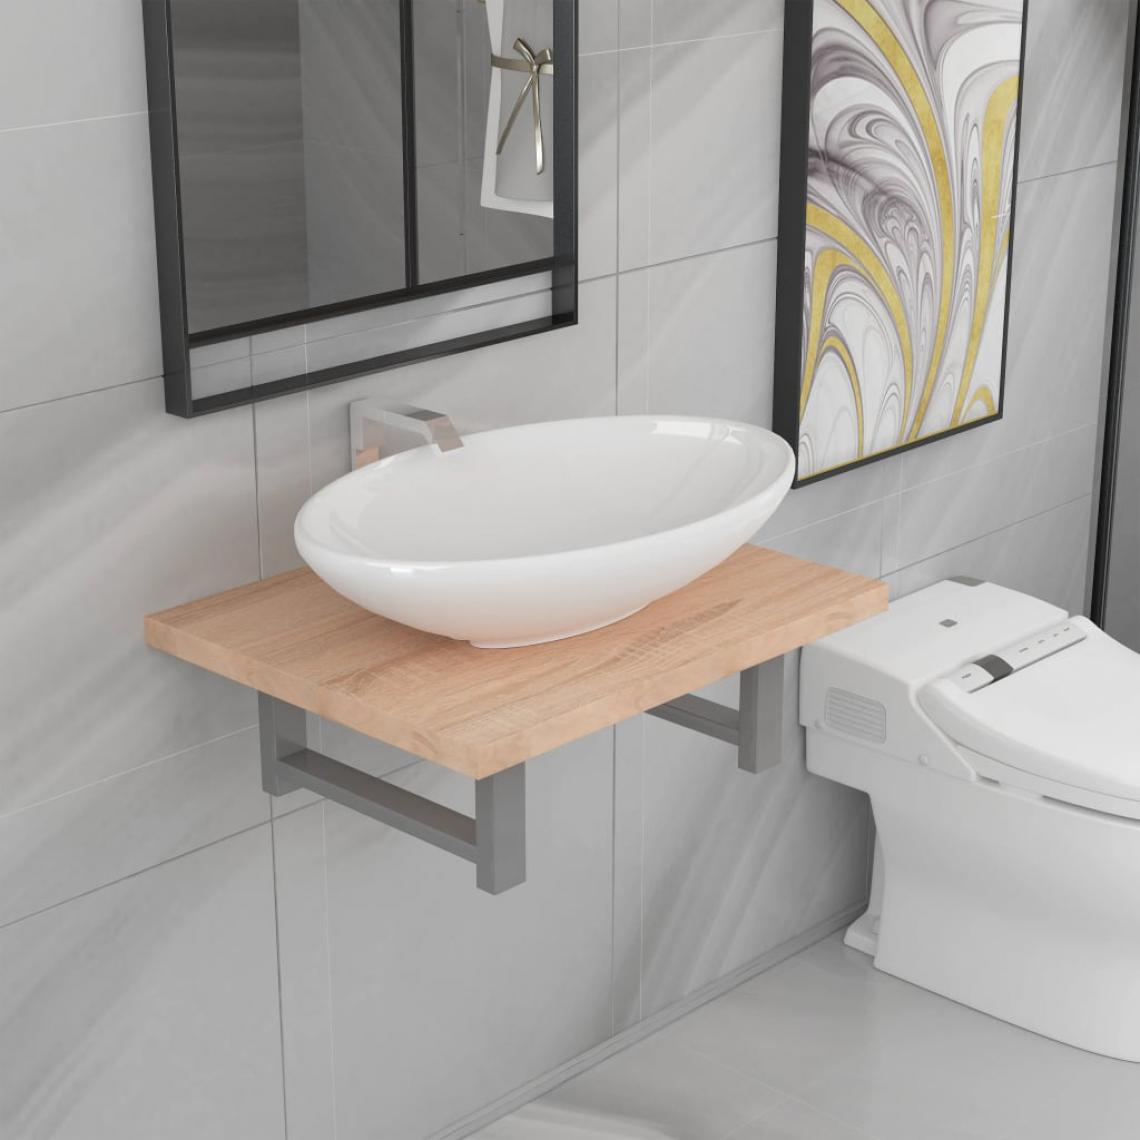 Chunhelife - Meuble de salle de bain en deux pièces - meuble bas salle de bain